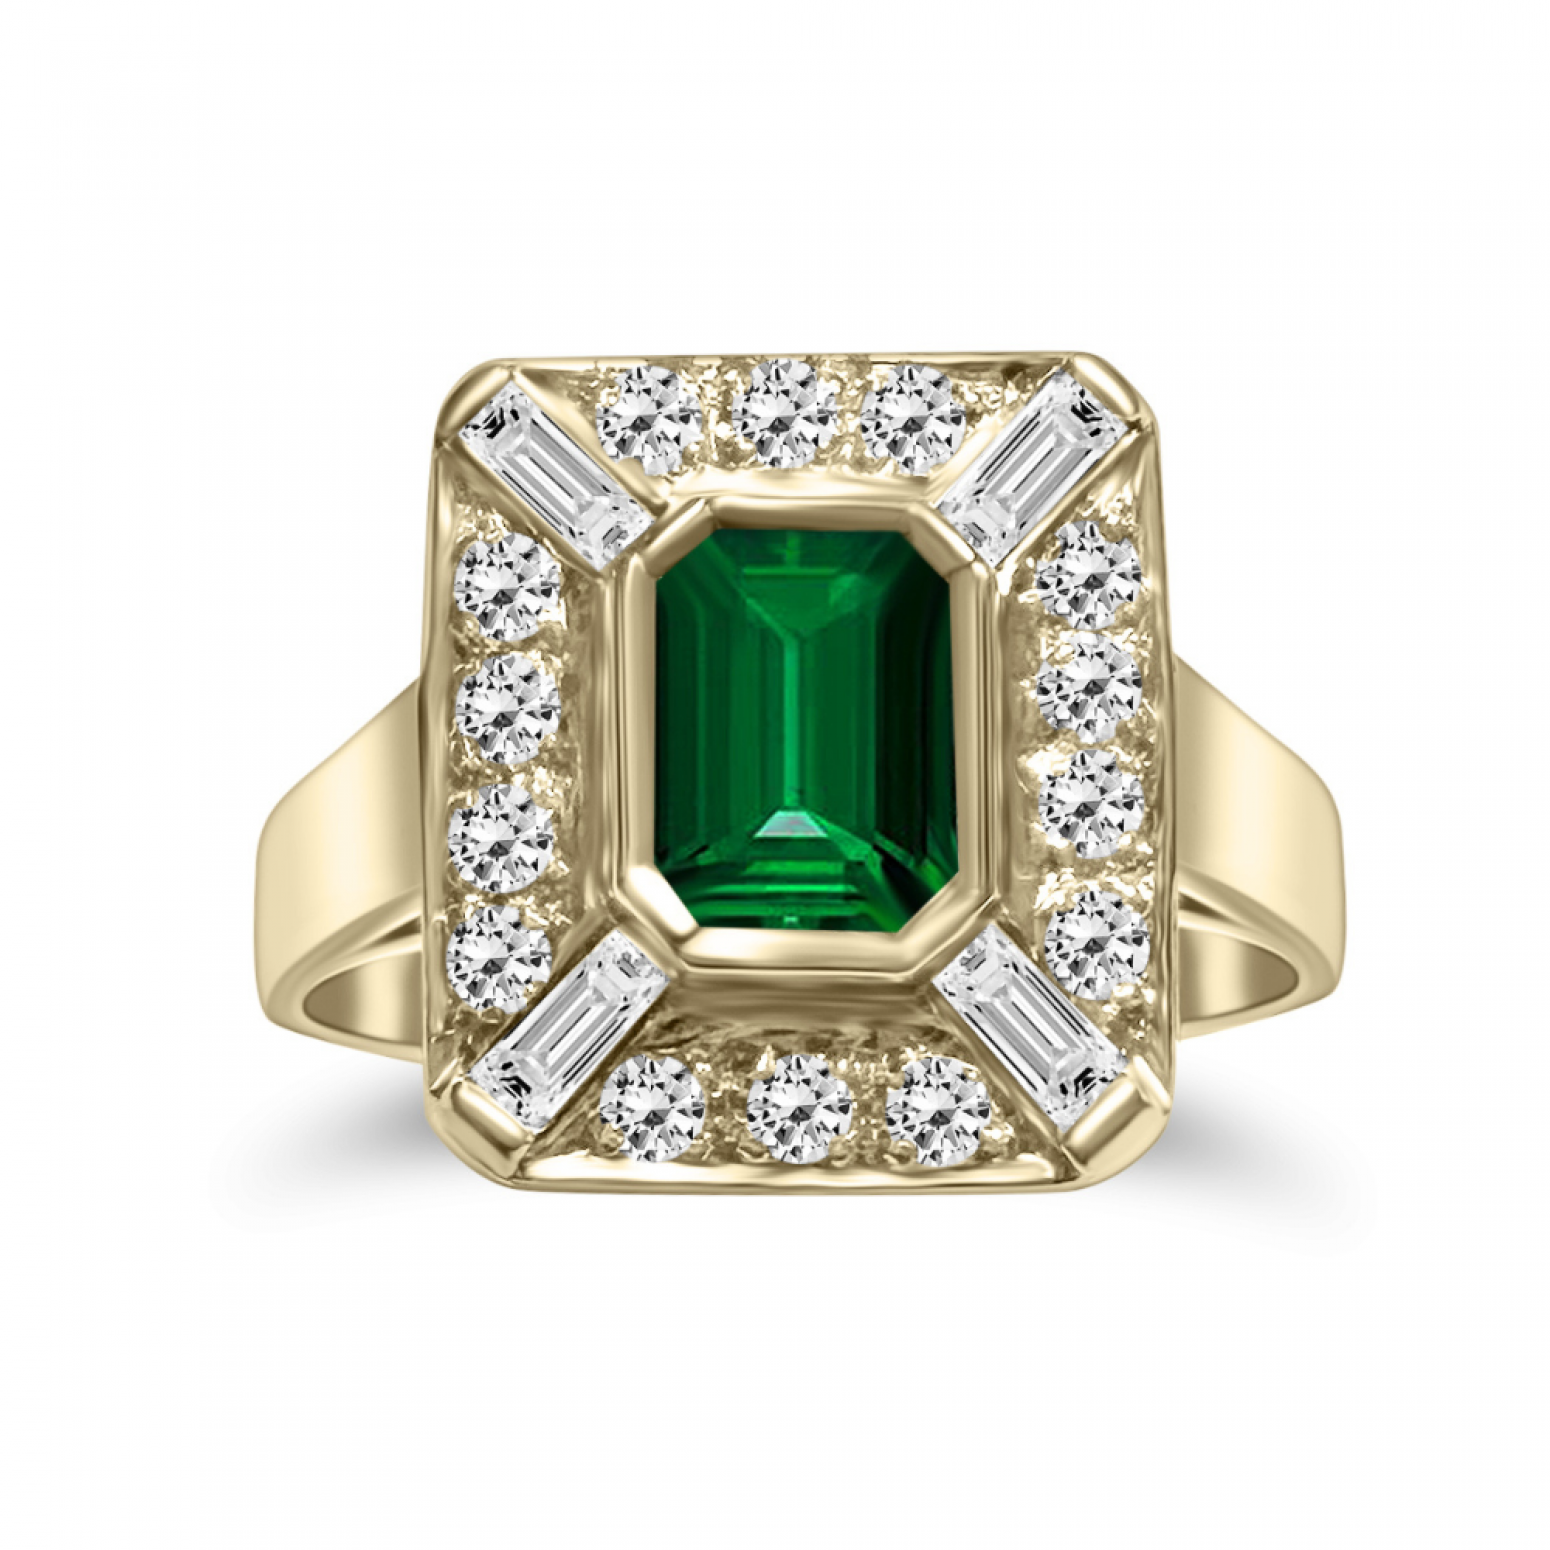 Δαχτυλίδι Κ18 χρυσό με σμαράγδι 0.70ct και διαμάντια VS2, F από το IGL da4317 ΔΑΧΤΥΛΙΔΙΑ ΑΡΡΑΒΩΝΑ Κοσμηματα - chrilia.gr